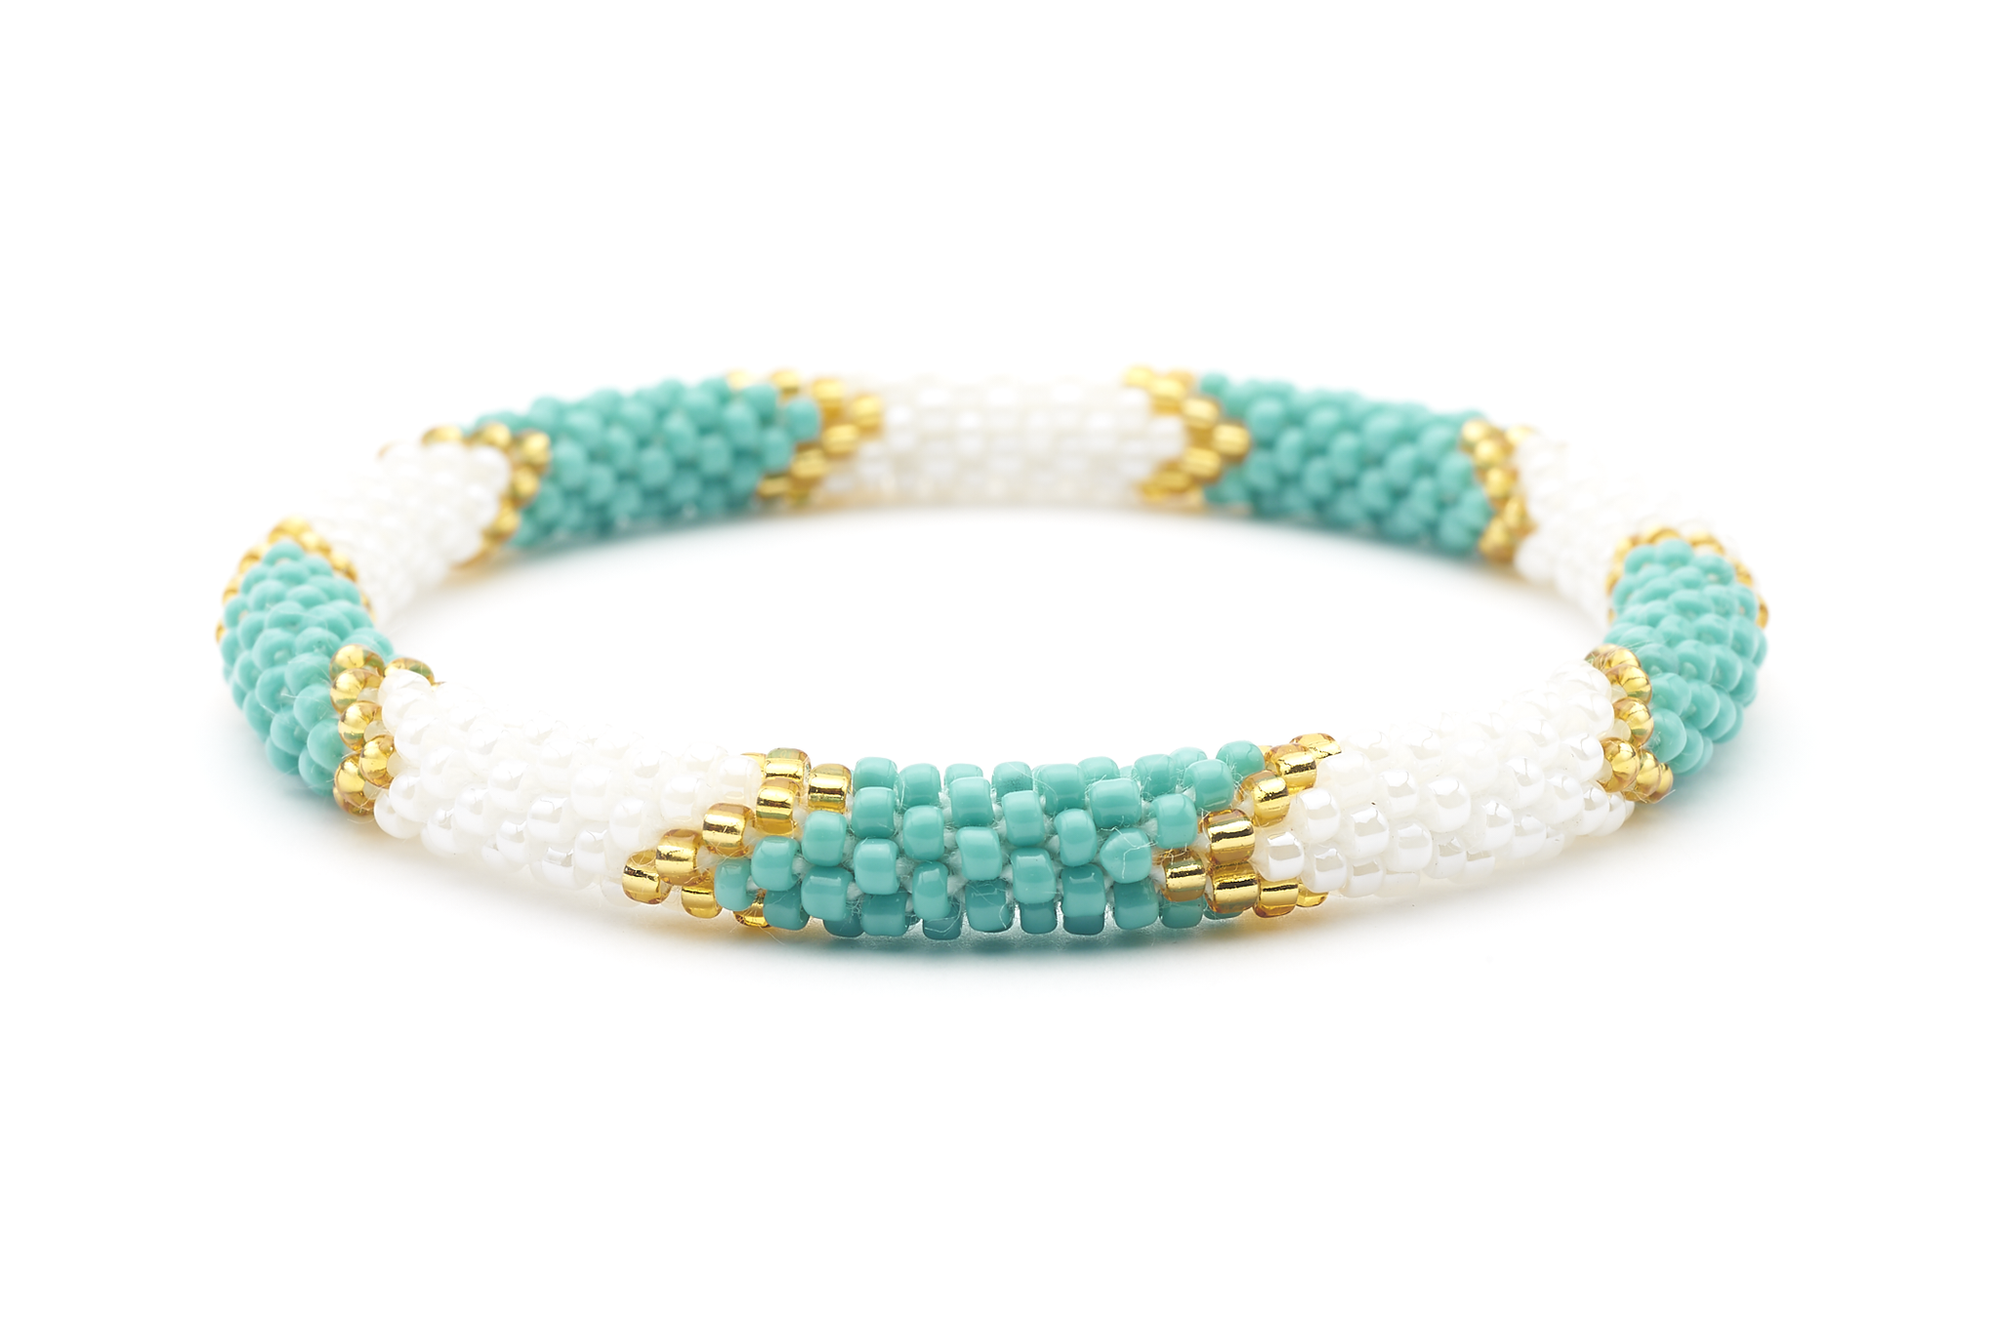 Sashka Co. Original Bracelet Turquoise / Gold / White Surfer Girl Bracelet